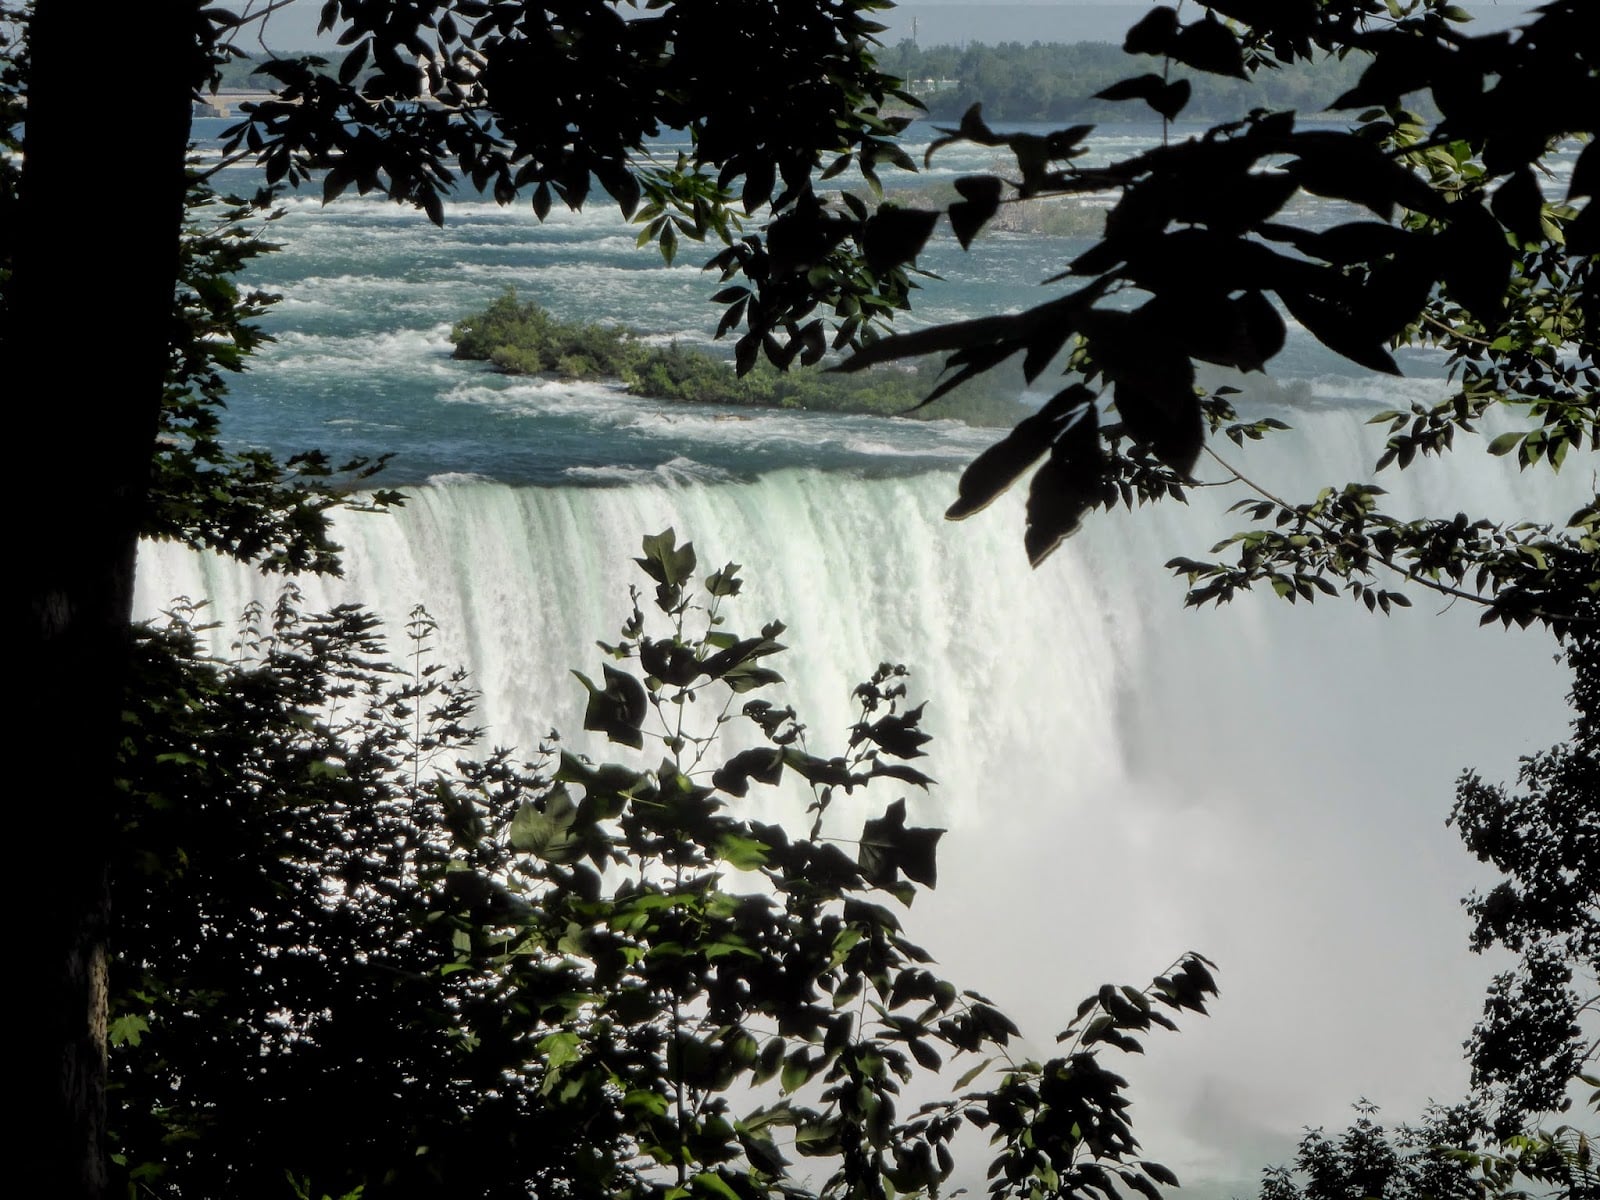 Lire la suite à propos de l’article Les chutes du Niagara et ses alentours